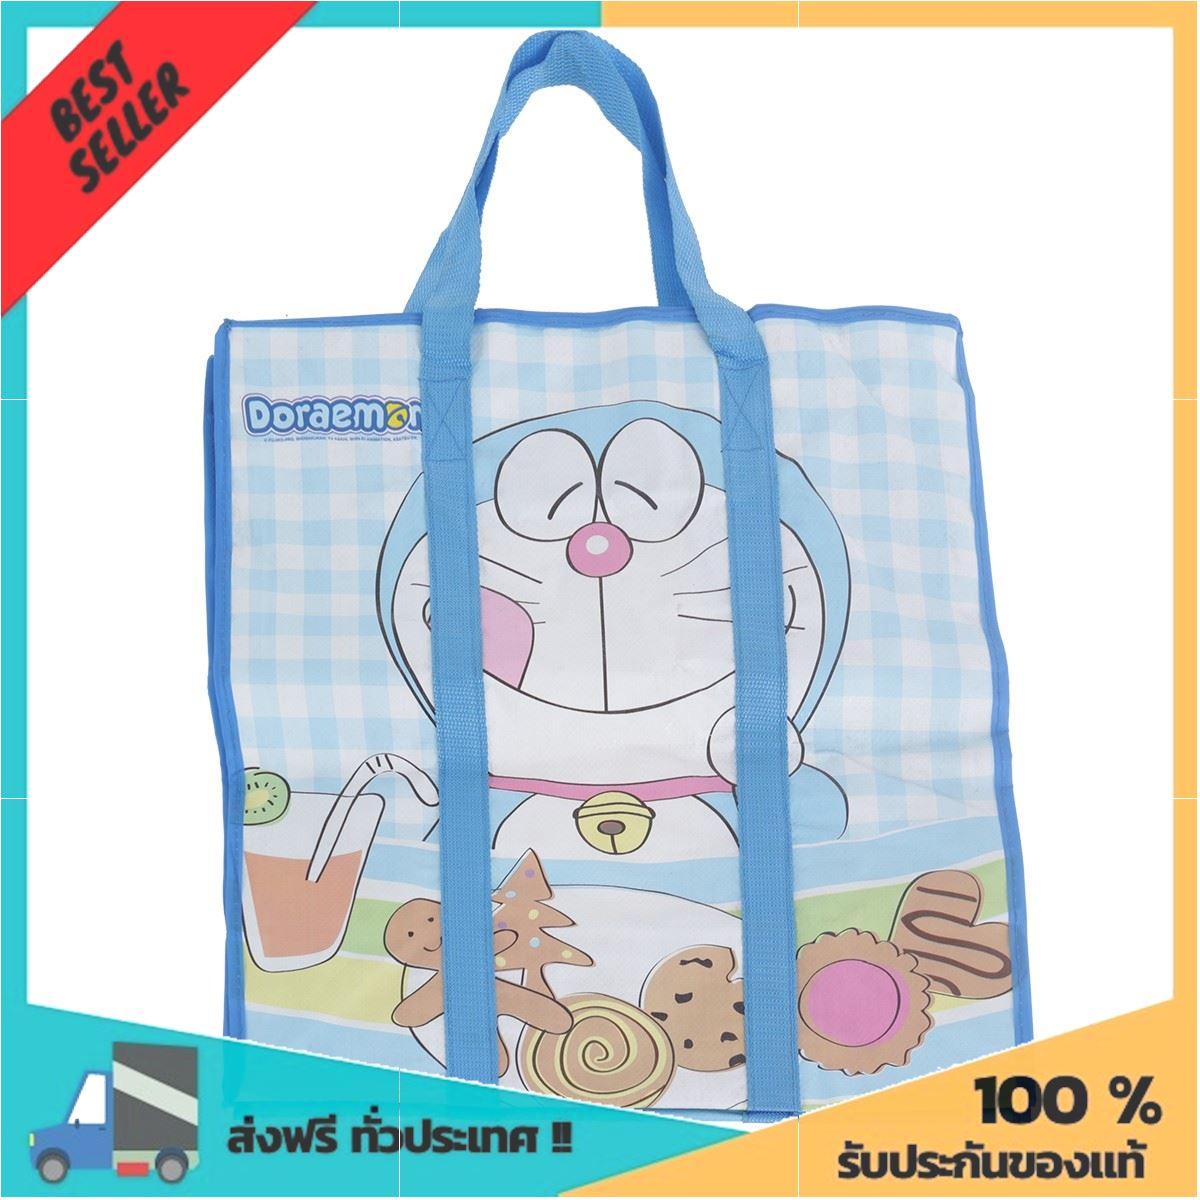 กระเป๋าผ้าฟาง ลาย Doraemon รุ่น C207_Stripe1 คละสี ลดจุกๆ